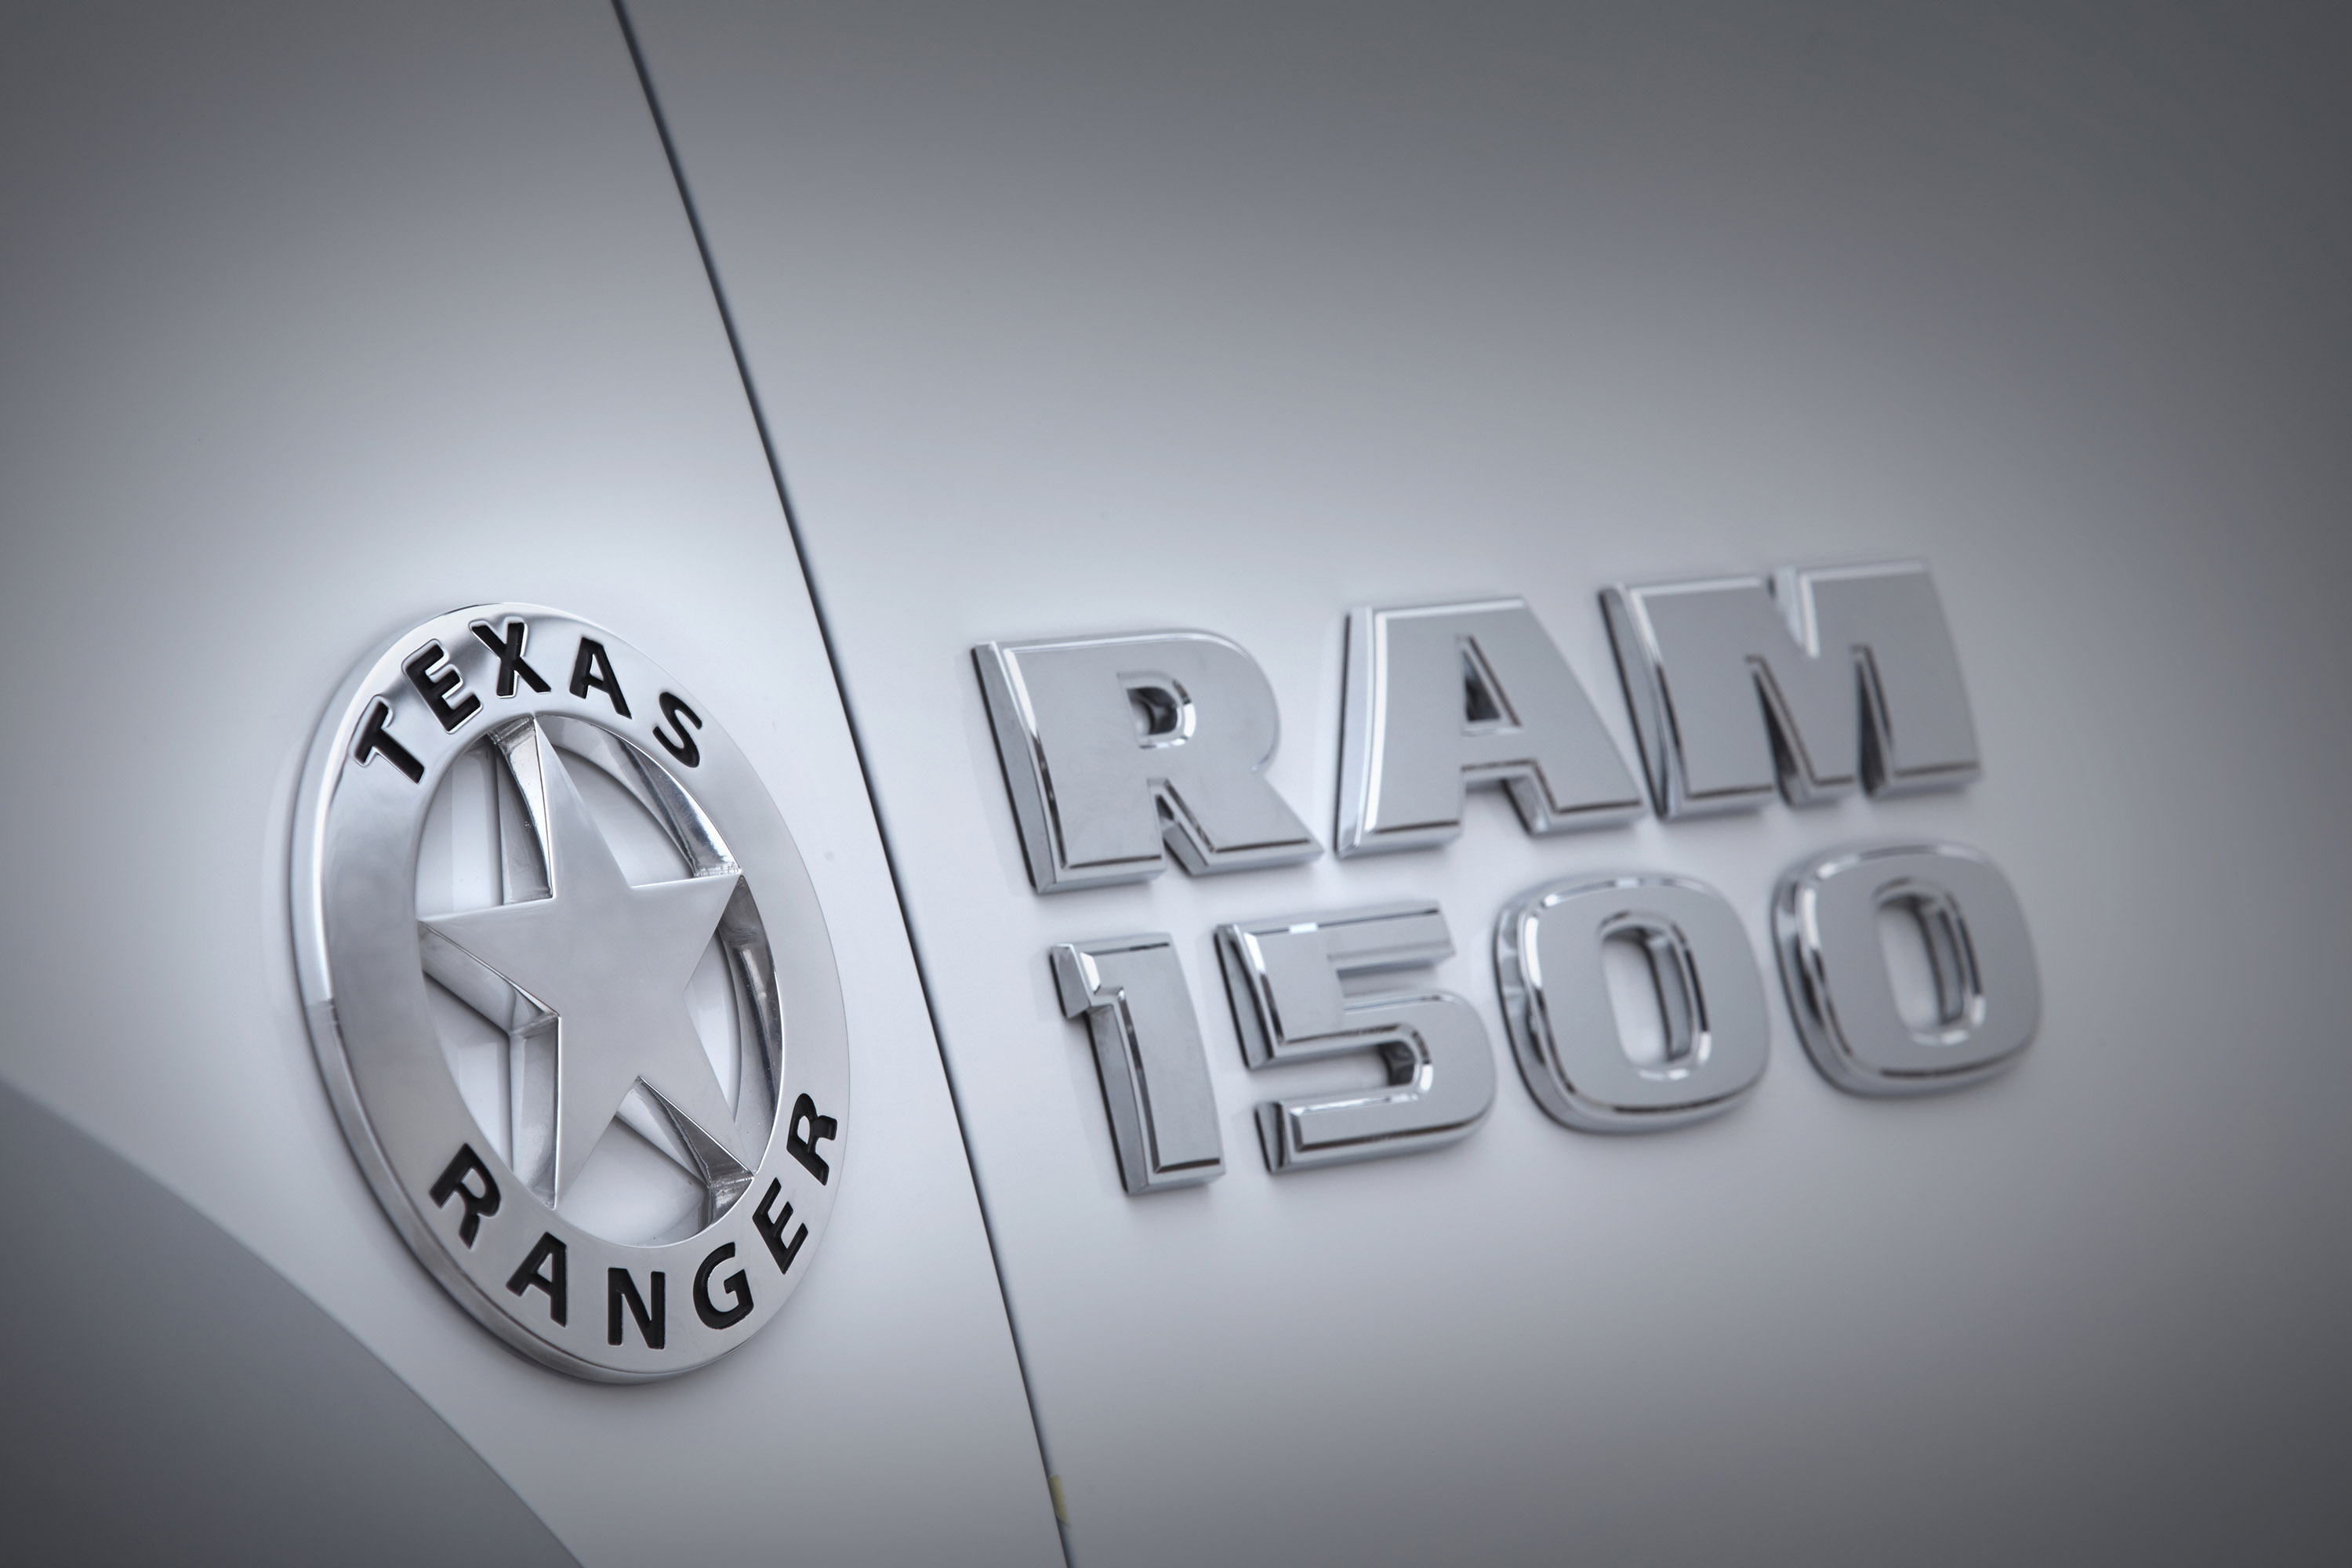 Ram 1500 Texas Ranger Concept Truck